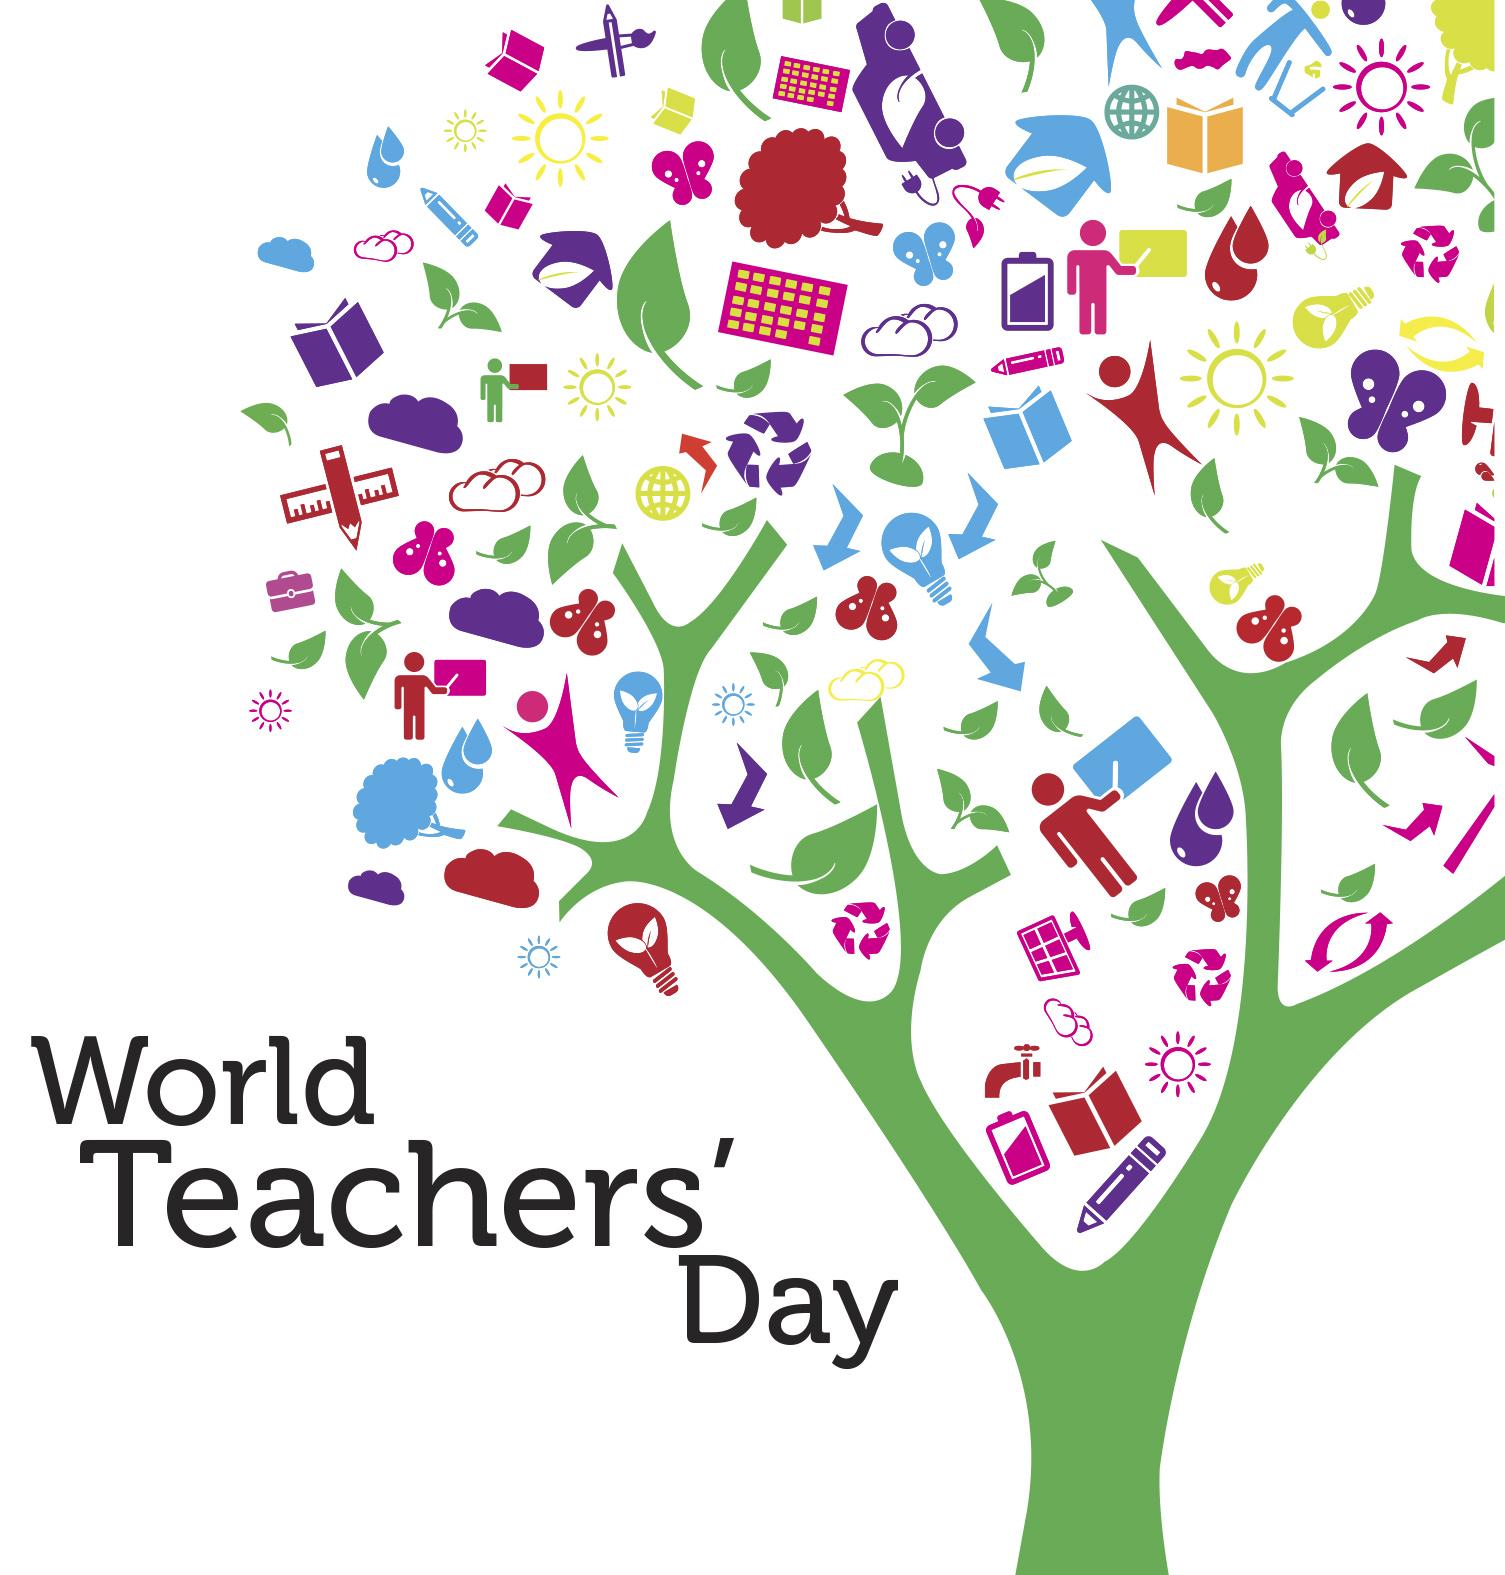 World Teachers' Day! Northern Gateway Public Schools